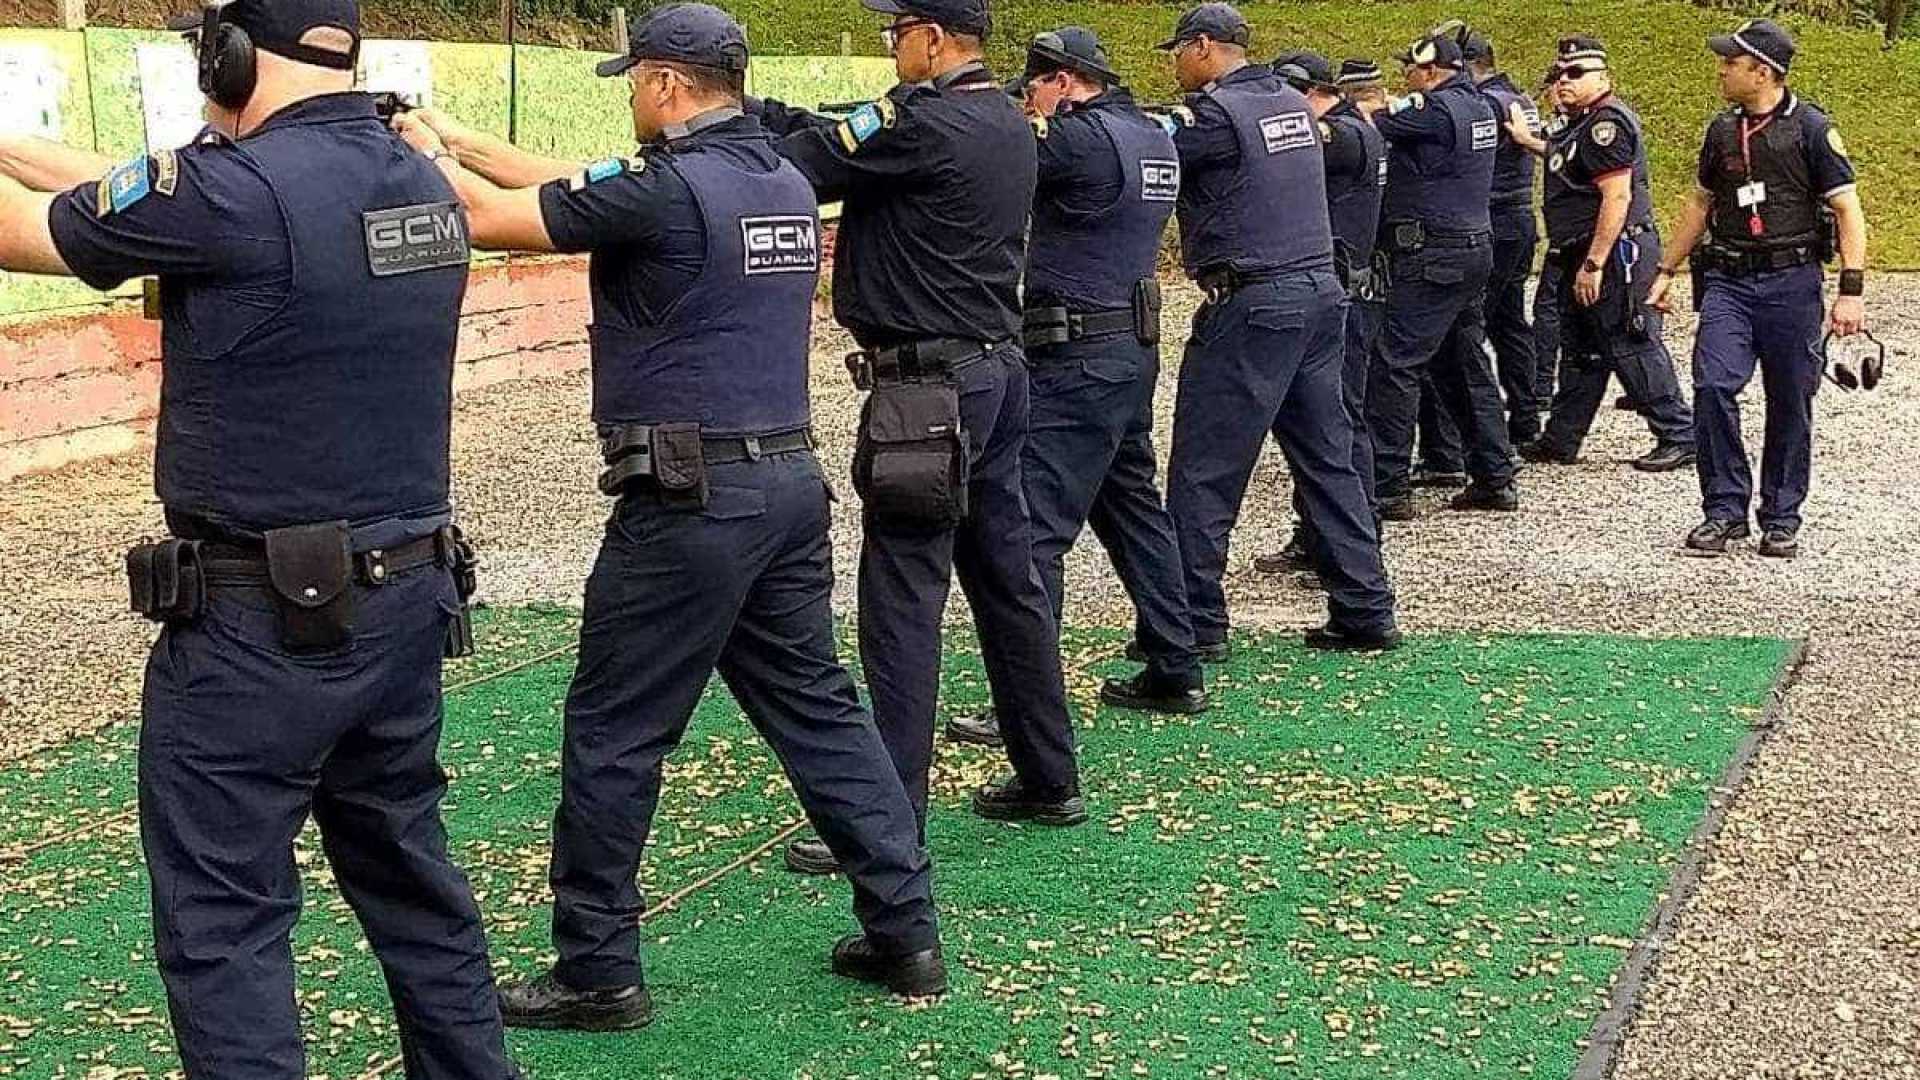 Cidade com guarda armada reduz mais homicídios, aponta estudo